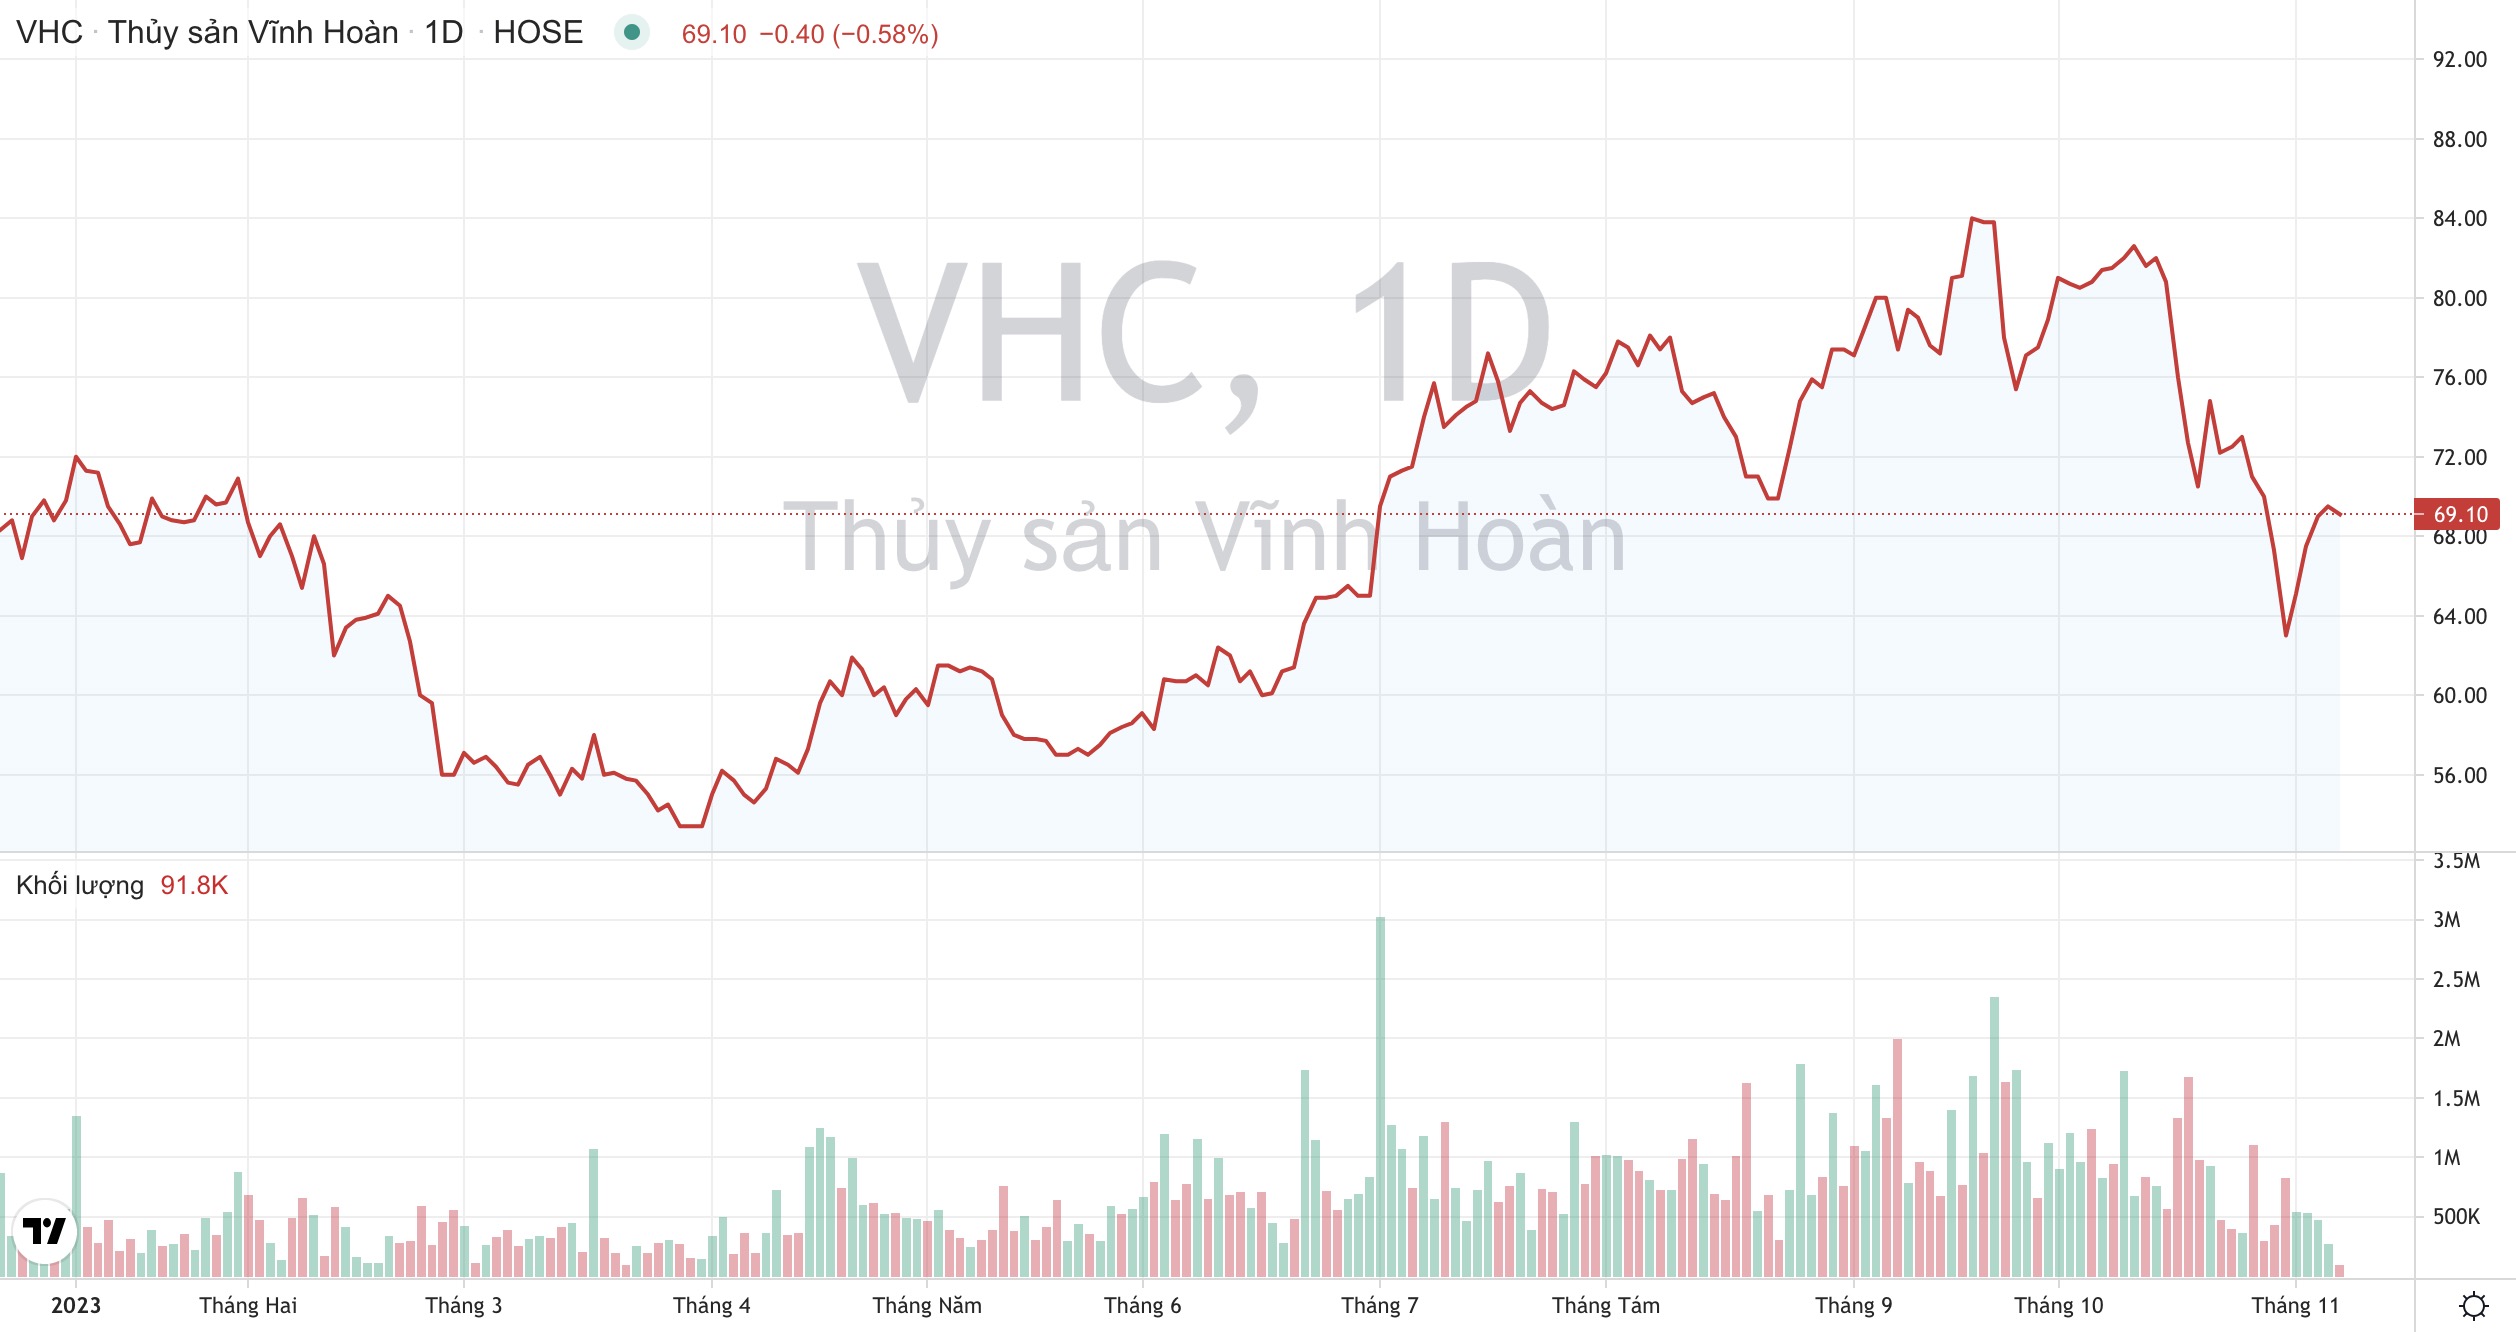 Giá cổ phiếu VHC Thuỷ sản Vĩnh Hoàn